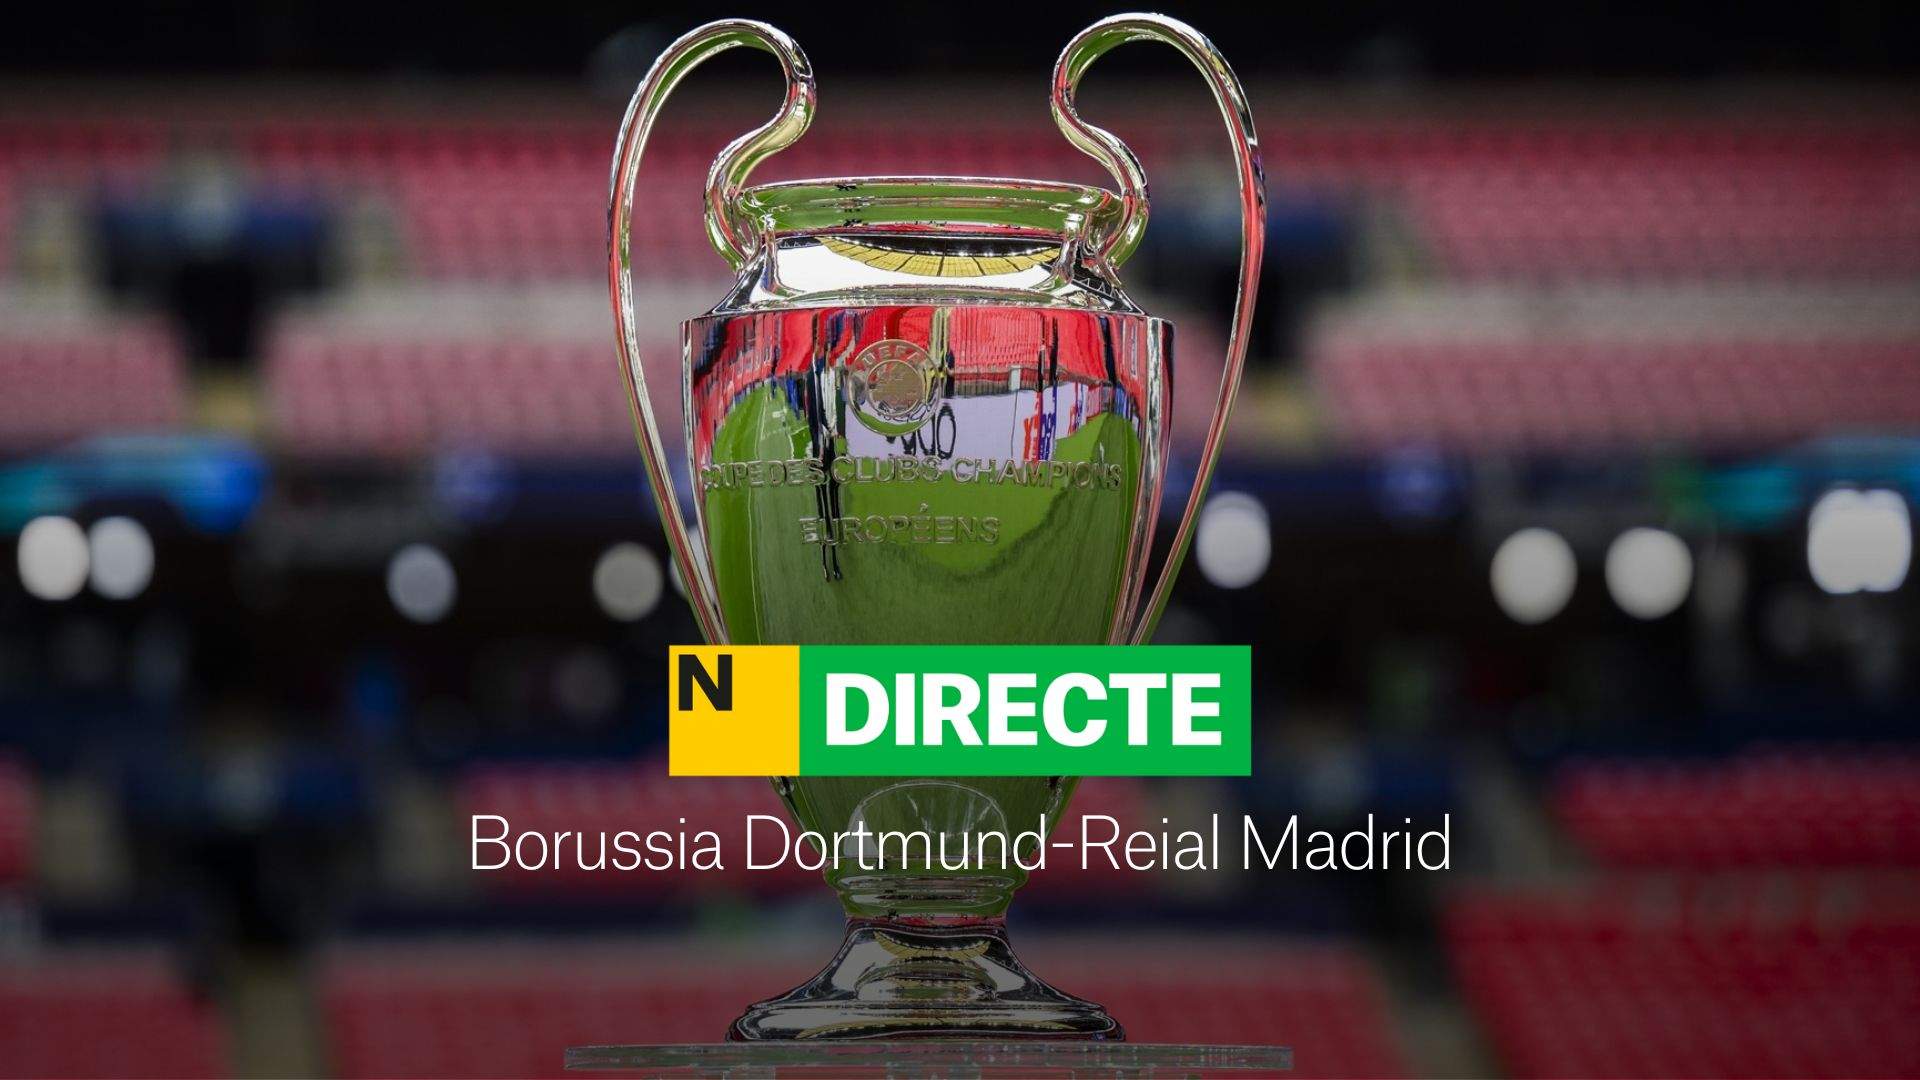 Borussia Dortmund-Reial Madrid, final de la Champions League, DIRECTE | Resultat, resum i gols